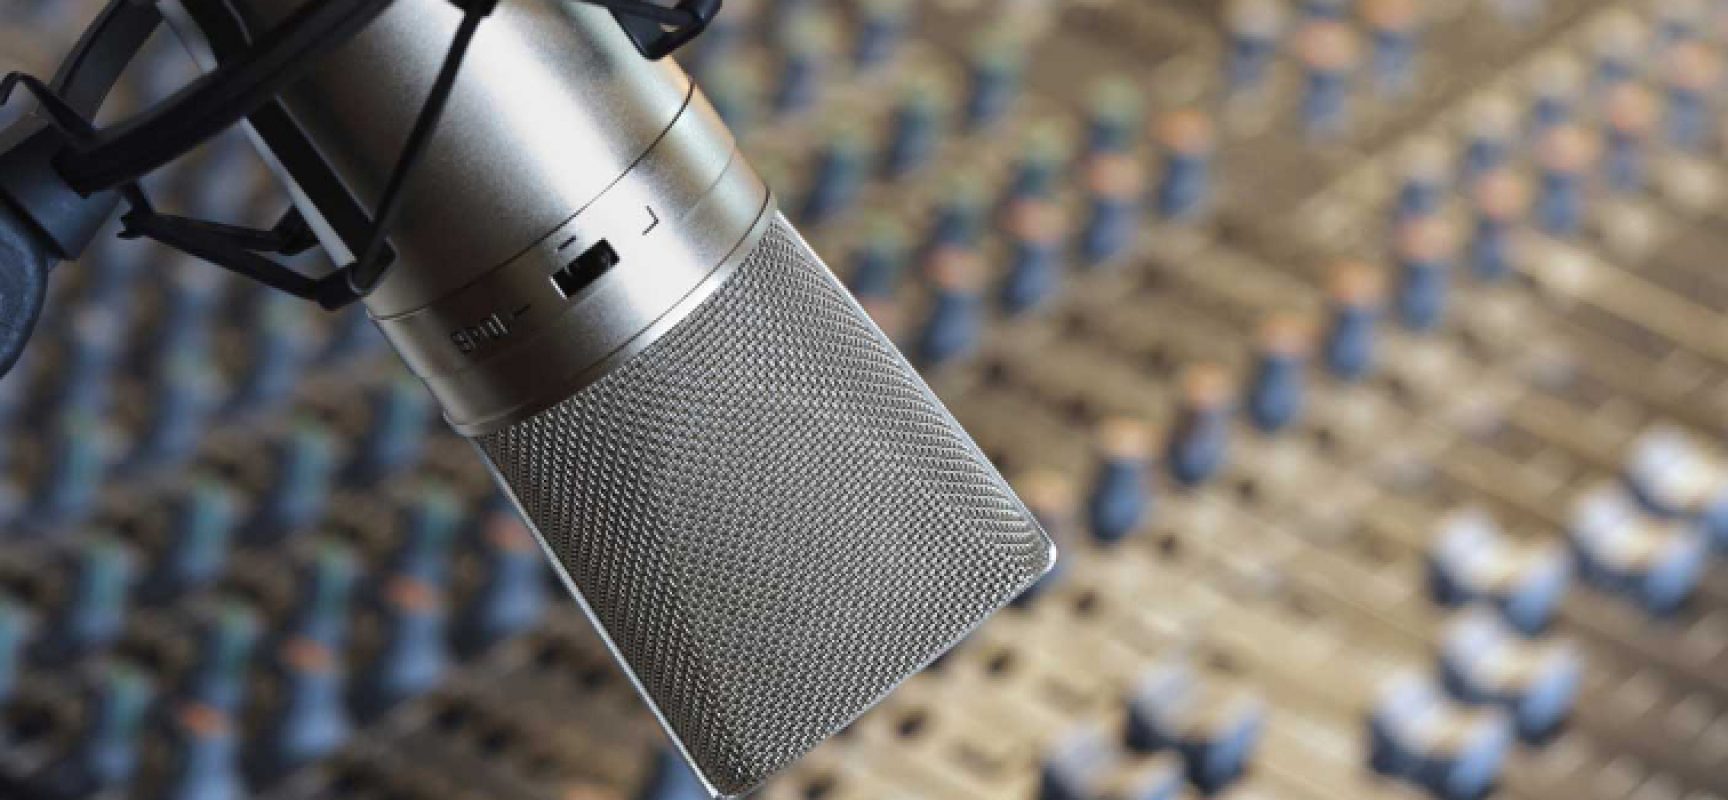 Riparte oggi il programma radiofonico “Cosa Succede in Città” su Radio Centro